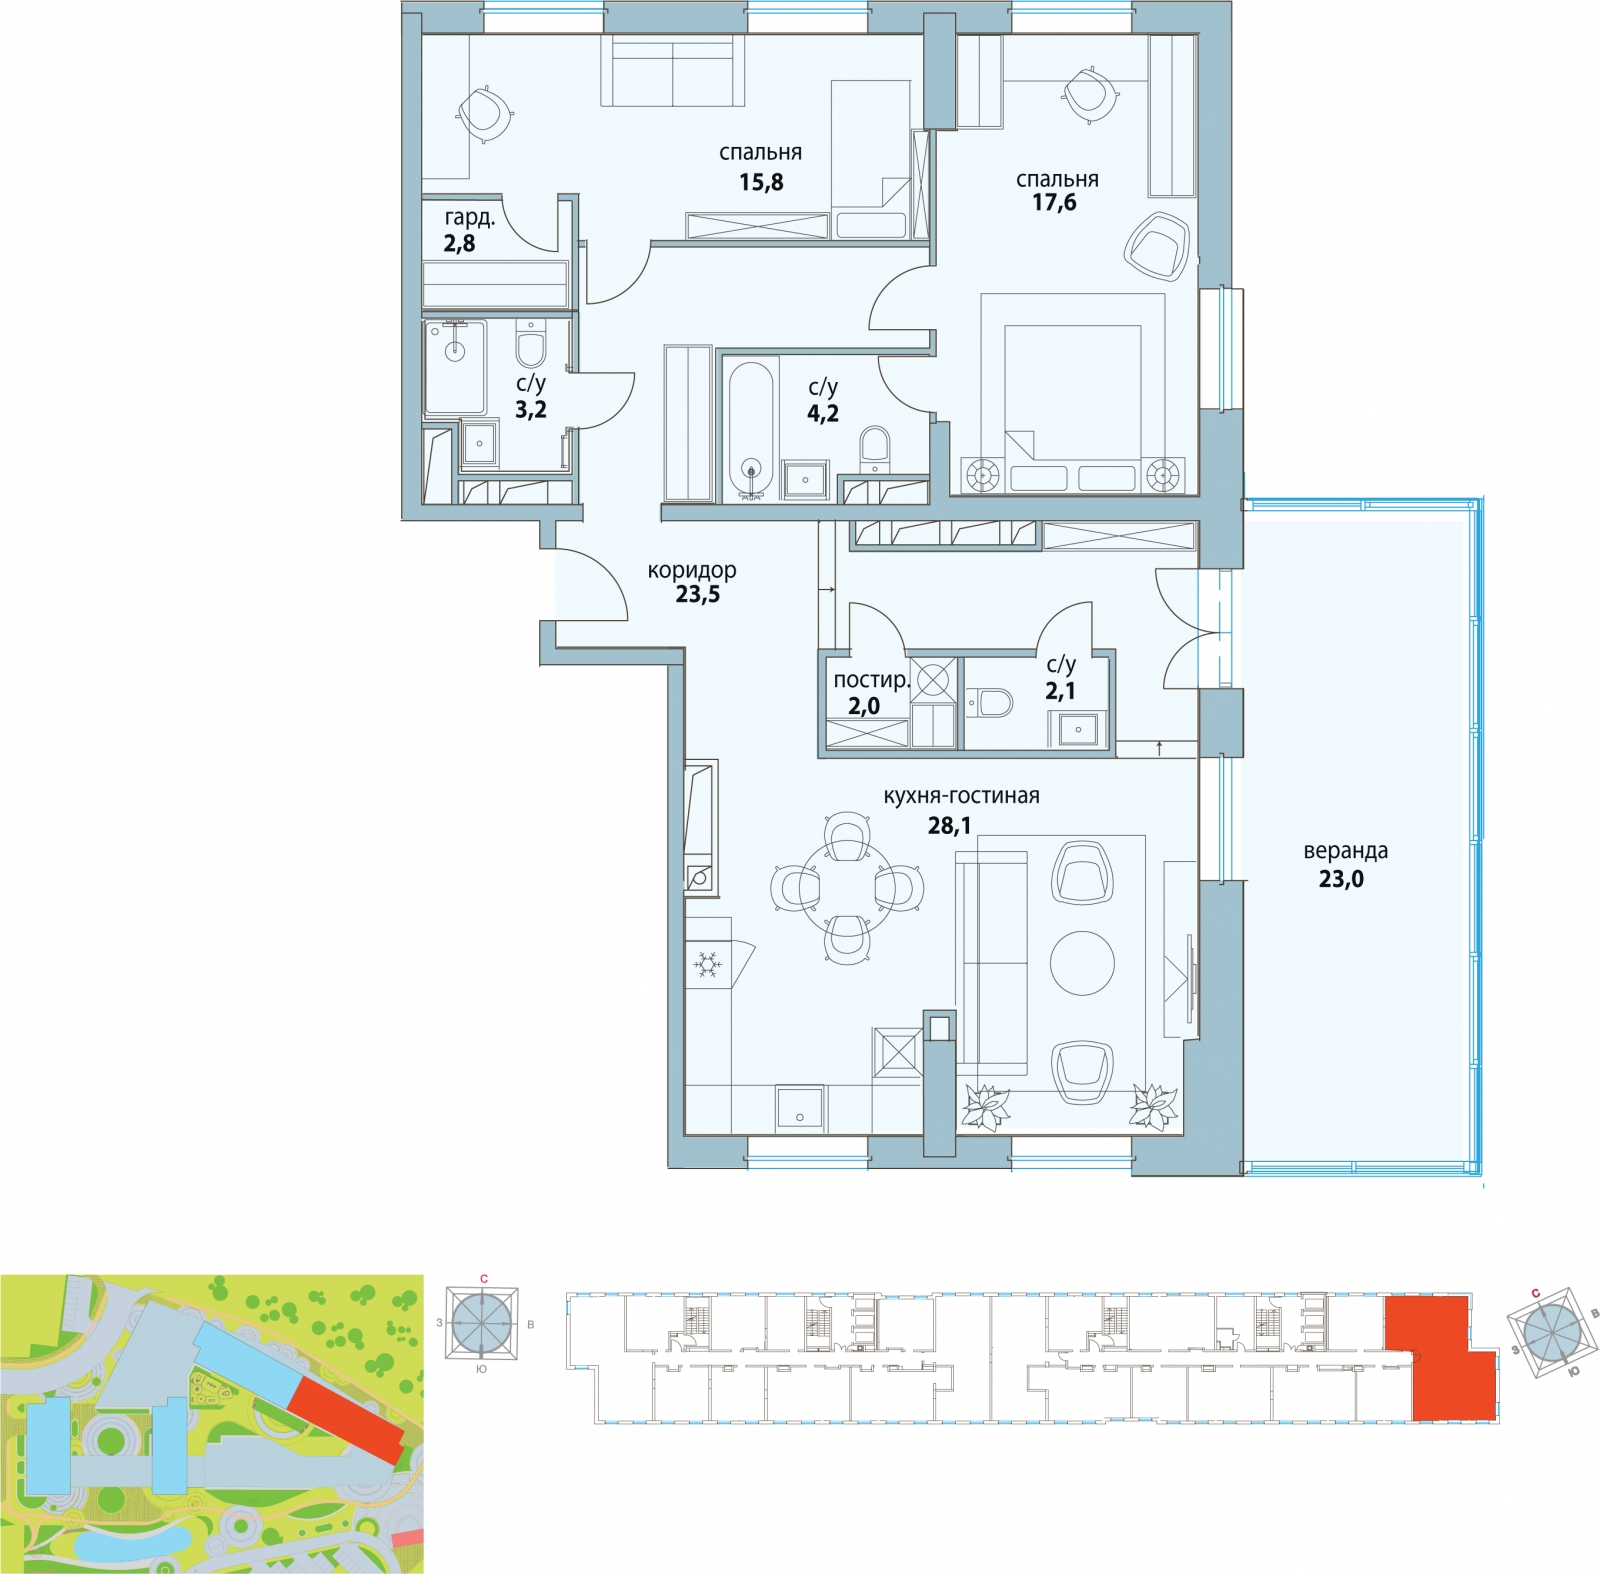 2-комнатная квартира с отделкой в ЖК Северная палитра на 19 этаже в 1 секции. Дом сдан.